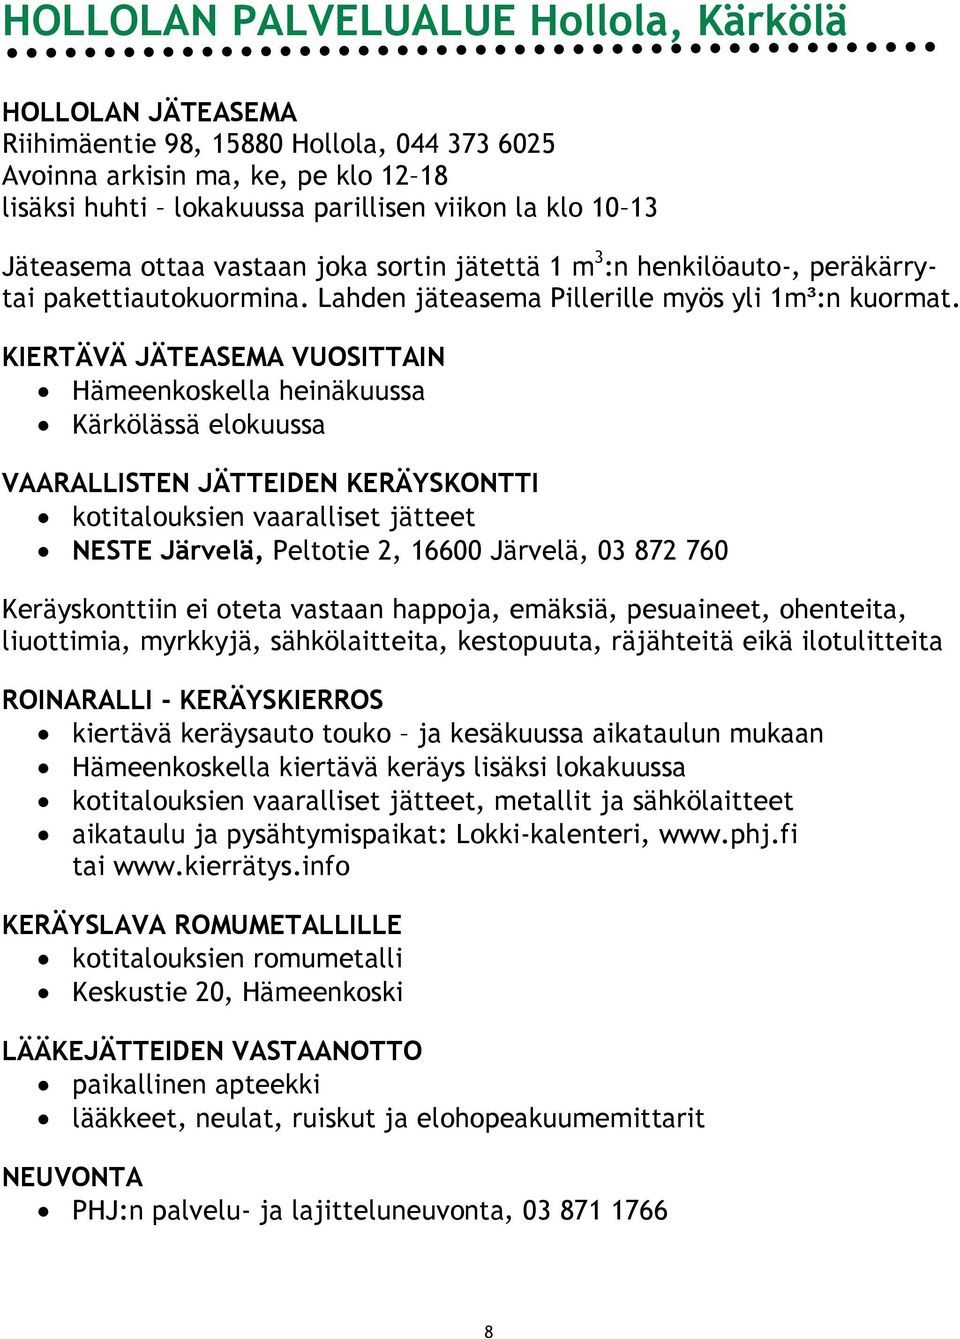 KIERTÄVÄ JÄTEASEMA VUOSITTAIN Hämeenkoskella heinäkuussa Kärkölässä elokuussa VAARALLISTEN JÄTTEIDEN KERÄYSKONTTI kotitalouksien vaaralliset jätteet NESTE Järvelä, Peltotie 2, 16600 Järvelä, 03 872